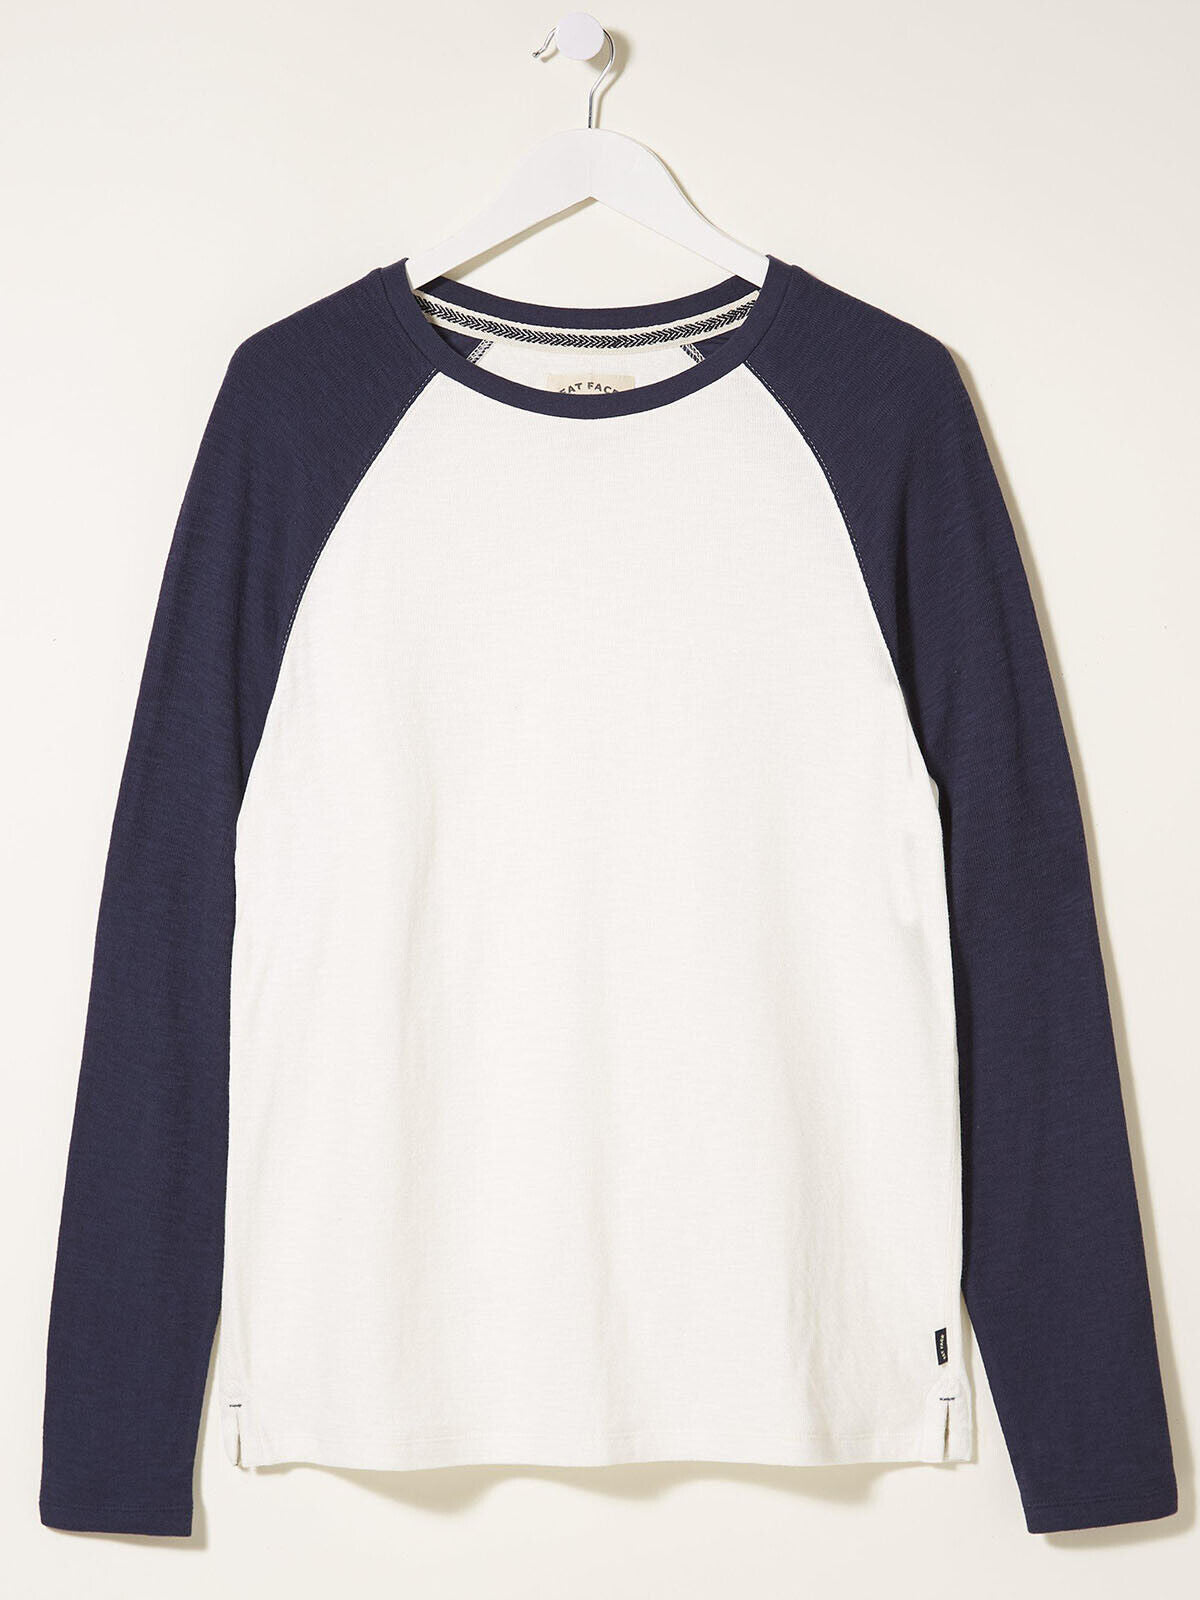 EX Fat Face Navy Mens Raglan Long Sleeve Textured Sweater Top S, M, L, XL